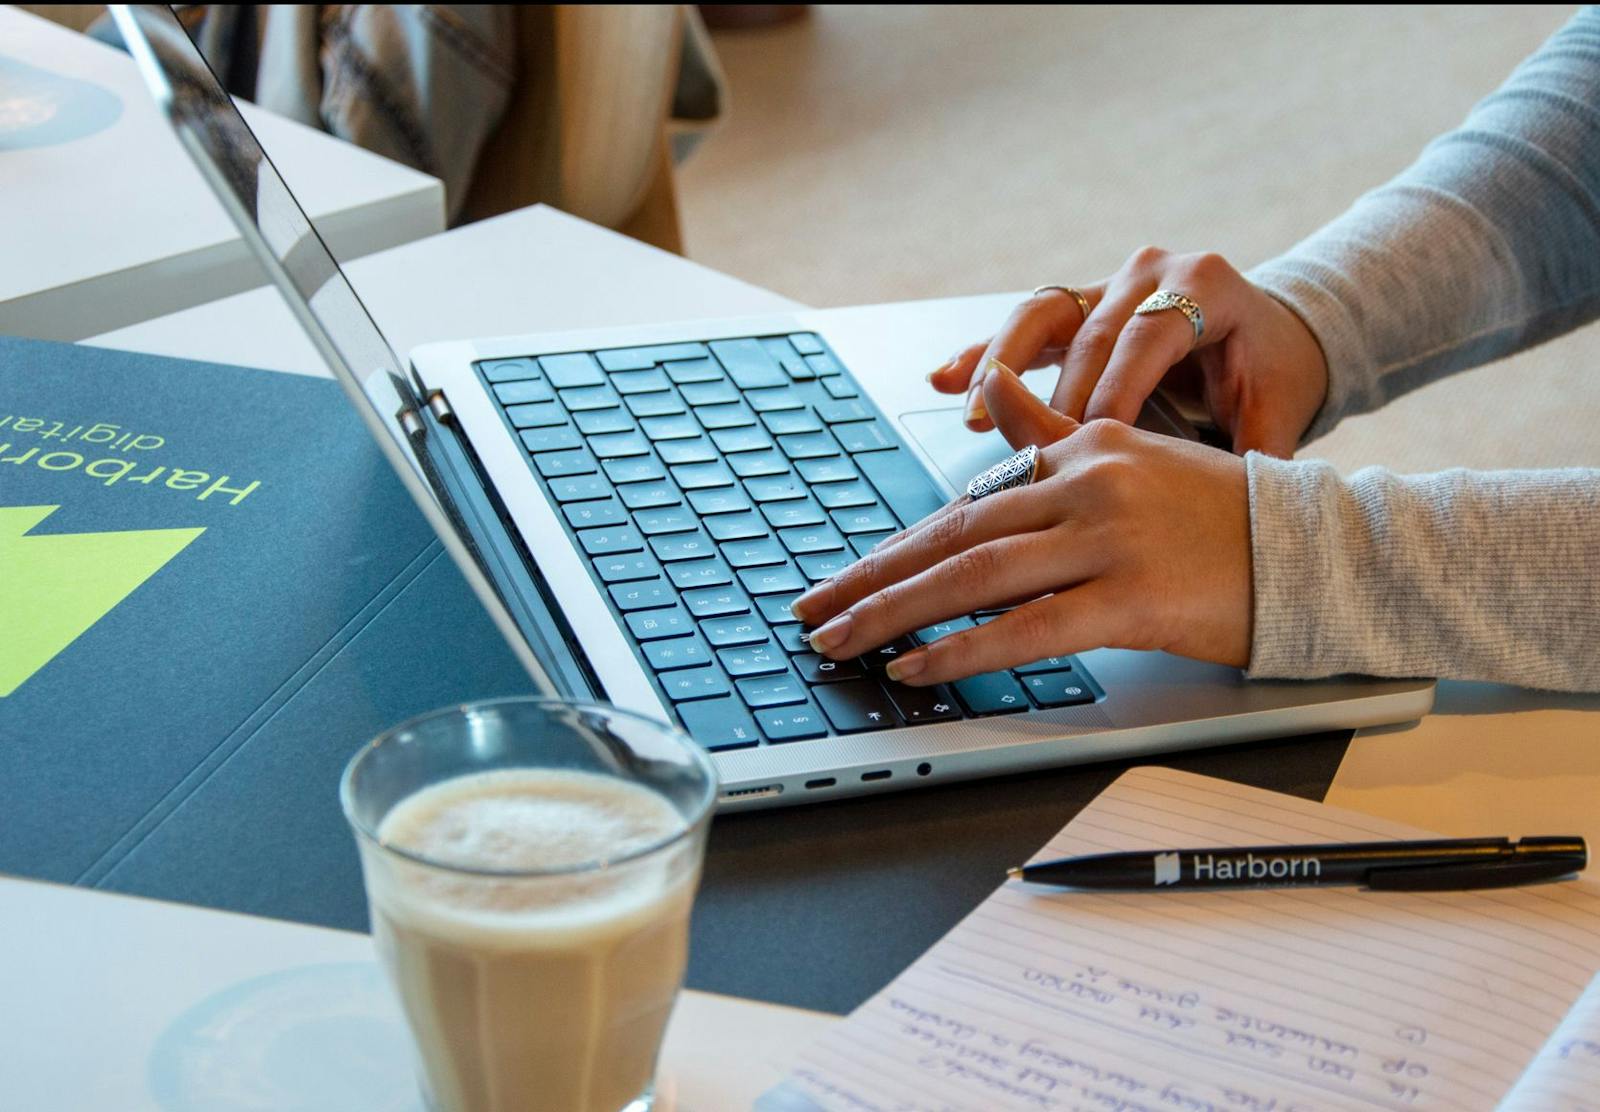 Digitale marketingprofessional werkt aan een laptop met analyses en strategie aantekeningen op het bureau, naast een kopje koffie.